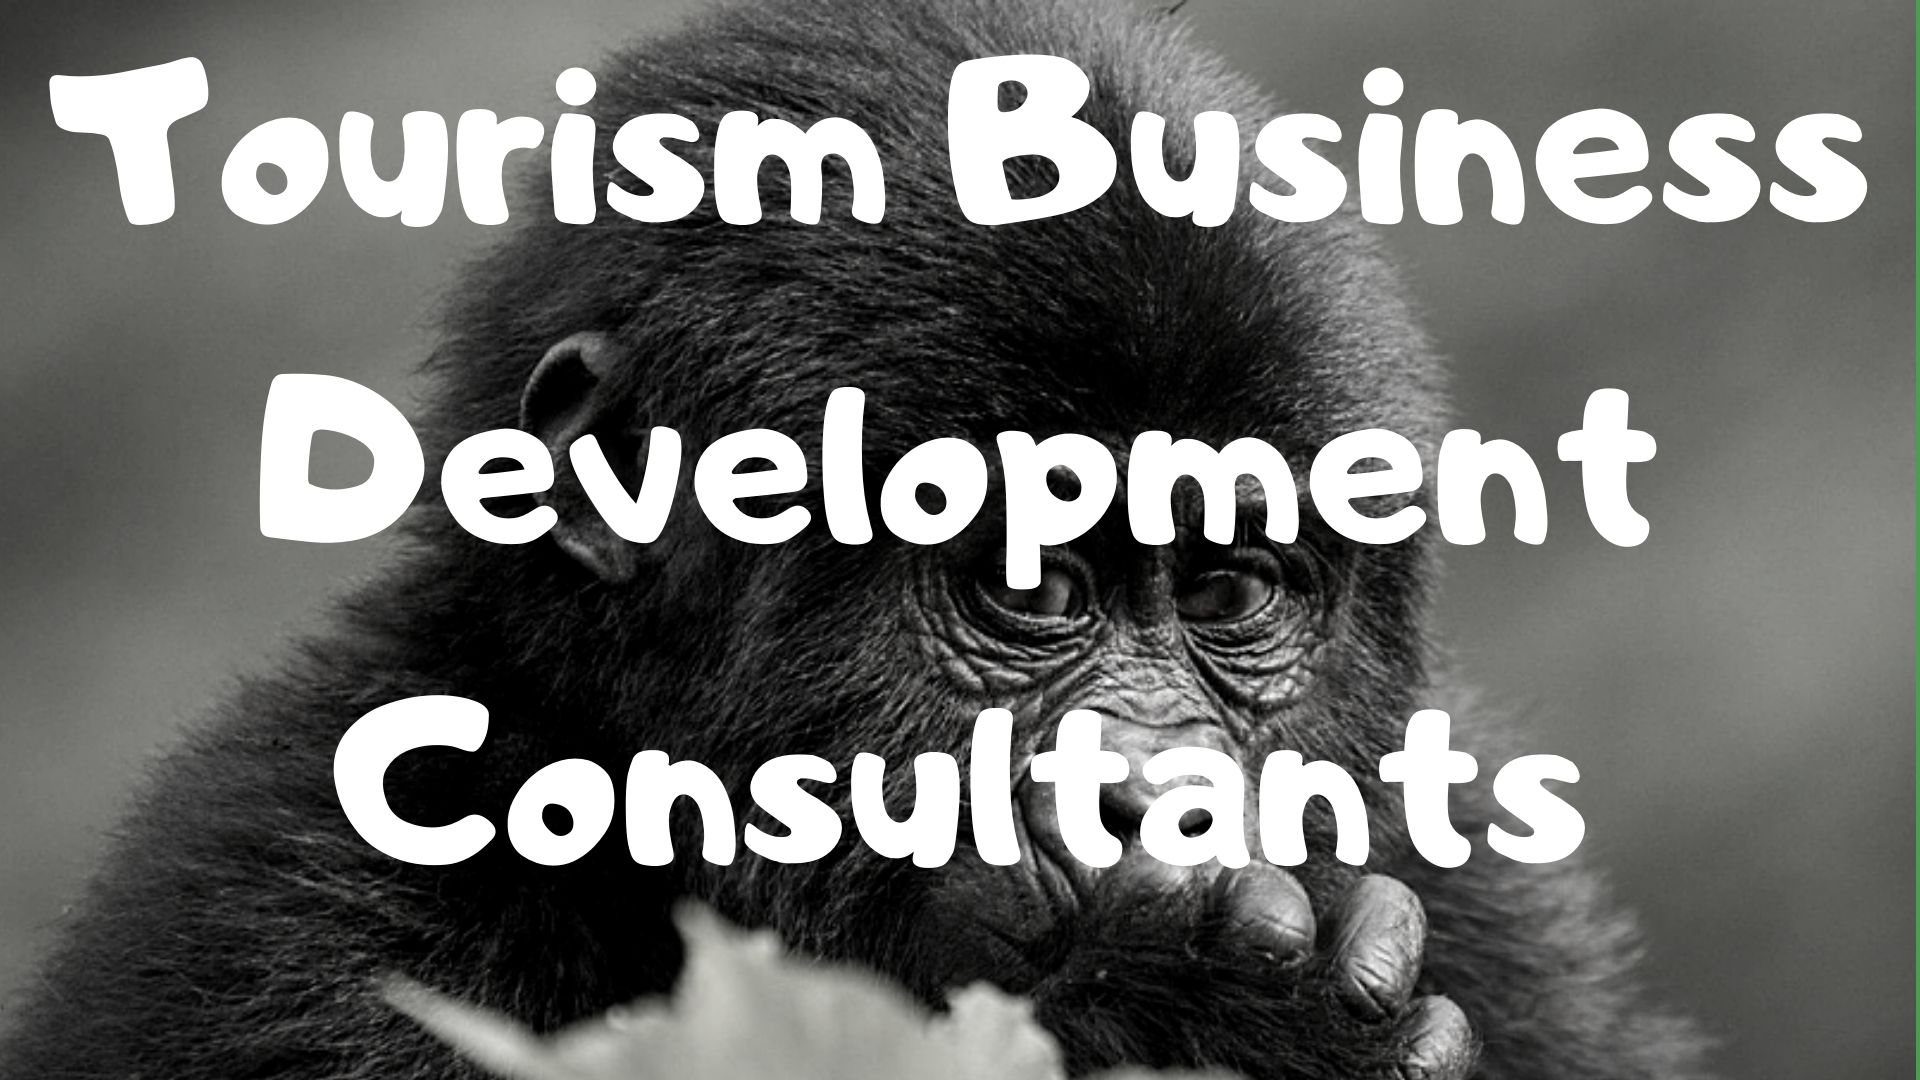 Tourism Business Development Consultants